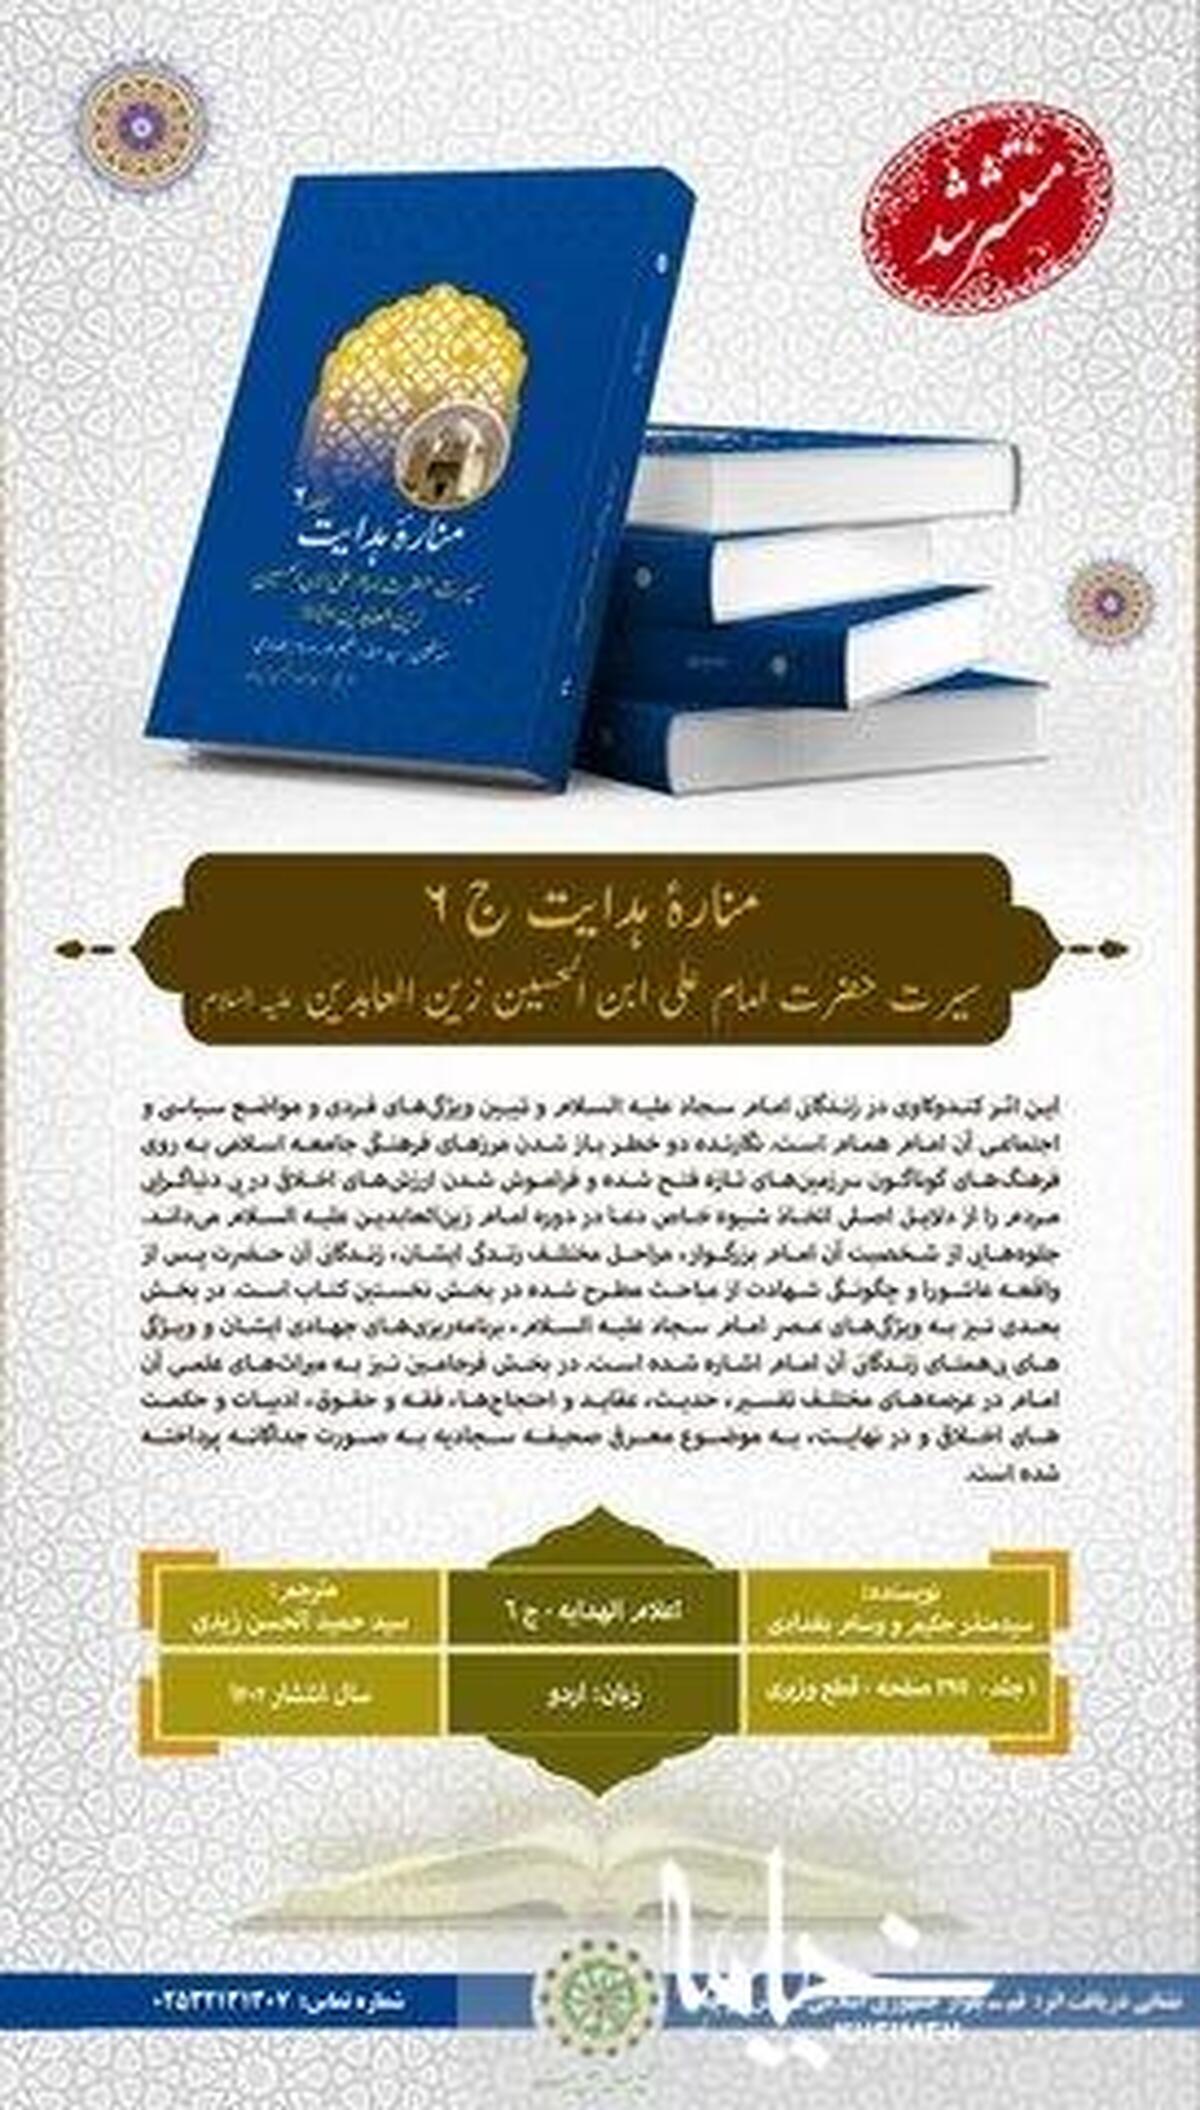 جلد ششم «اعلام الهدایه» به زبان اردو ترجمه و منتشر گردید